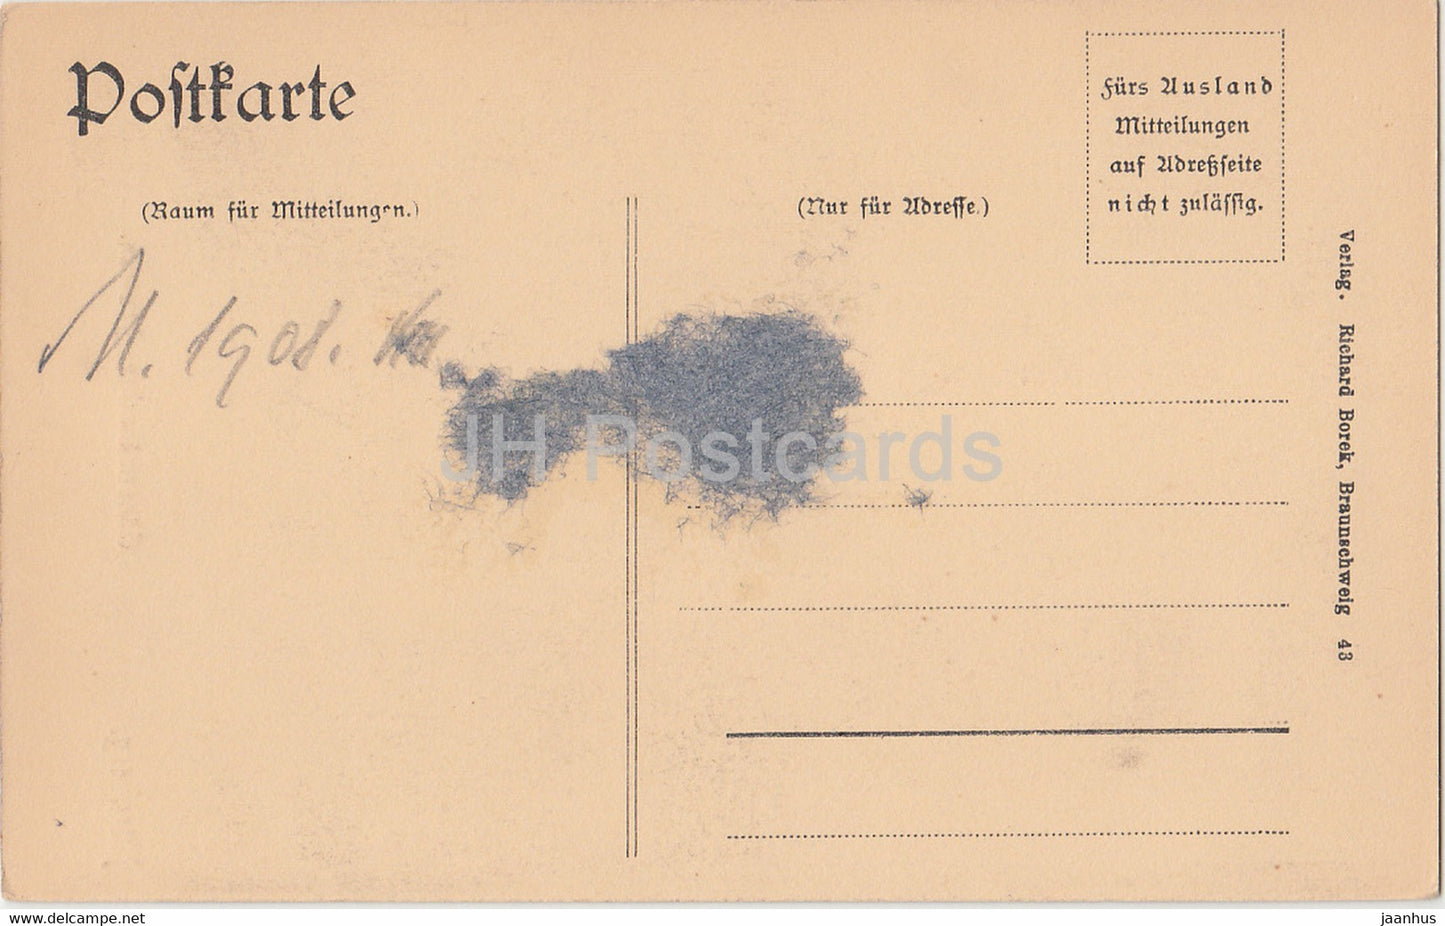 Nurnberg - Gansemannchen Brunnen - old postcard - 1908 - Germany - unused